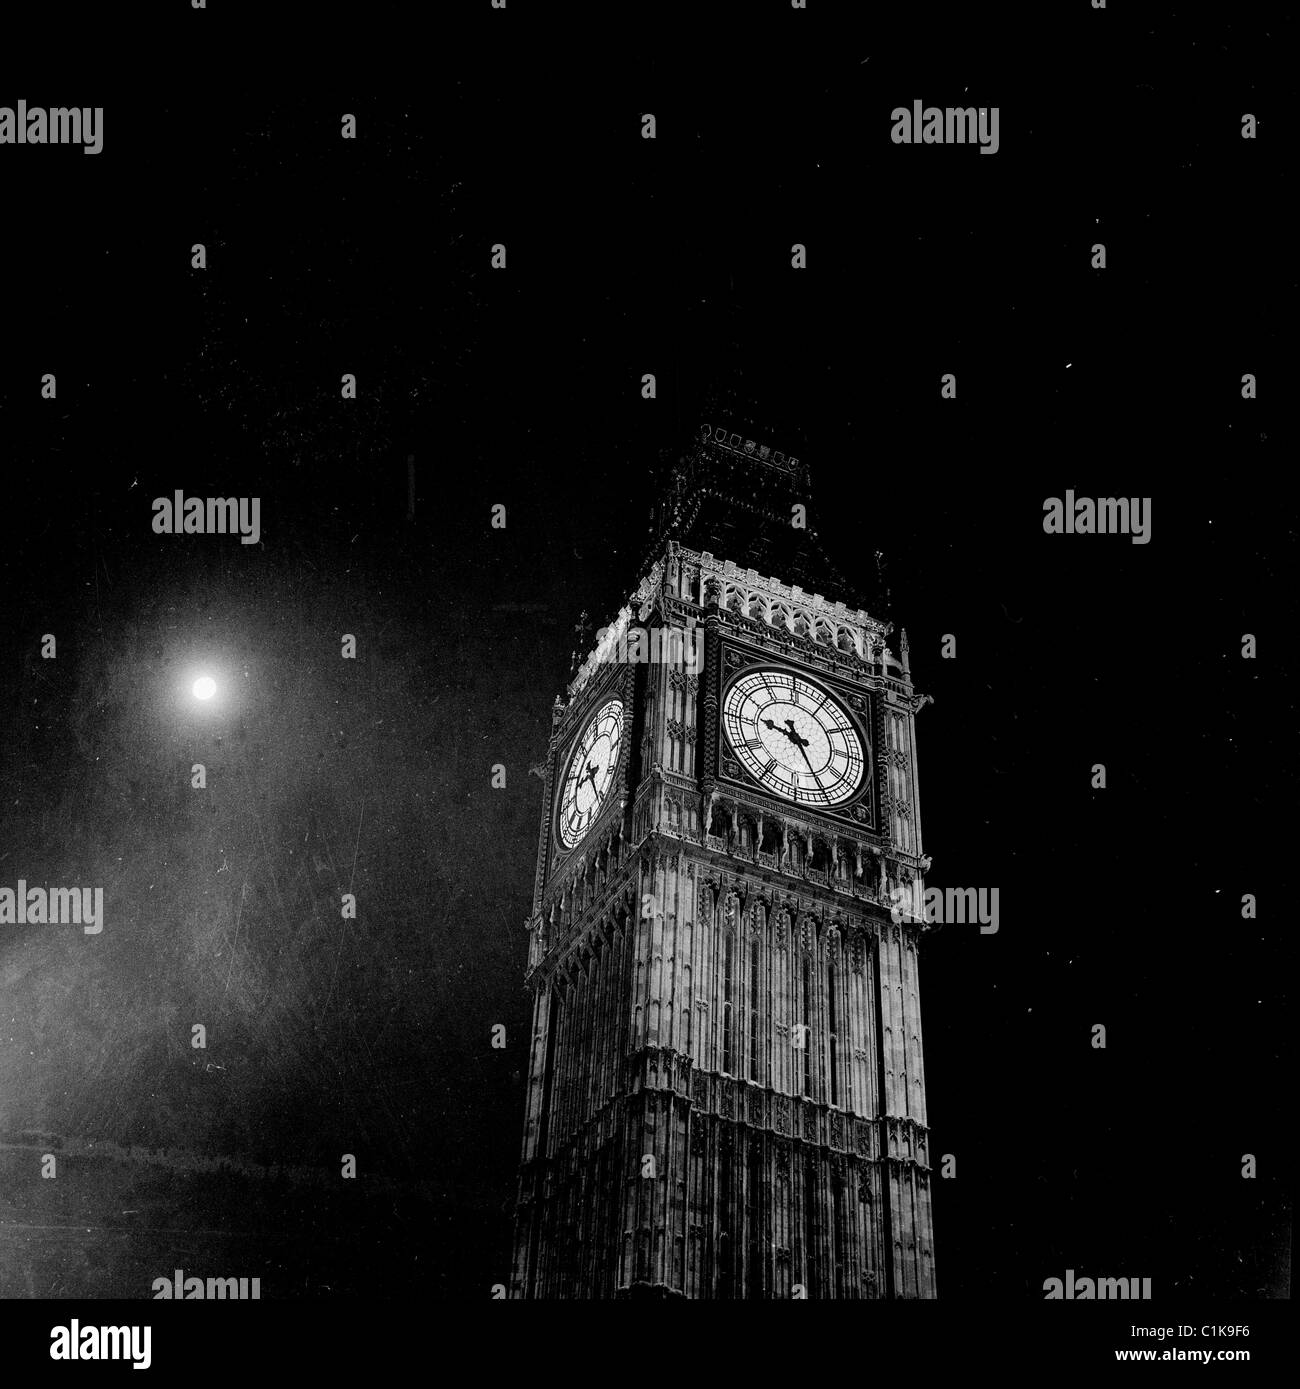 der 1960er Jahre in dieses Geschichtsbild durch J Allan Cash, eine Nacht Zeit Blick auf Londons berühmten Uhrturm, Big Ben und der Mond. Stockfoto